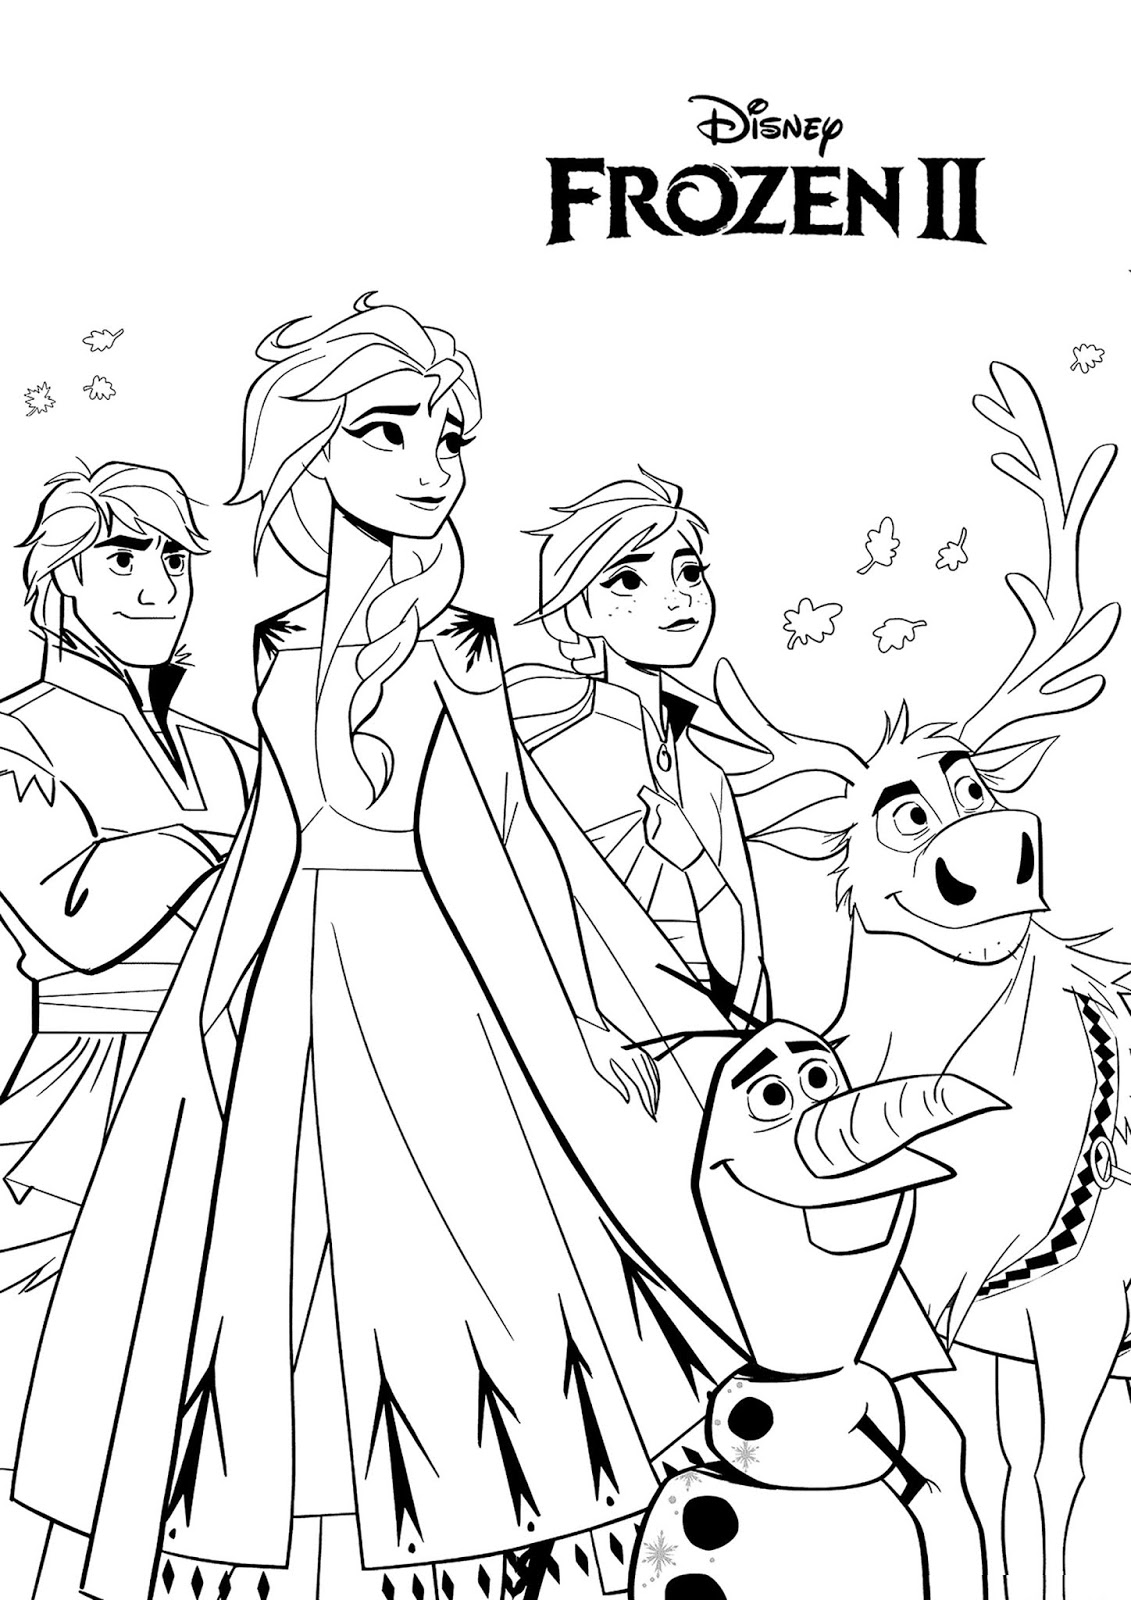 Tranh tô màu công chúa Elsa và Anna xinh đẹp